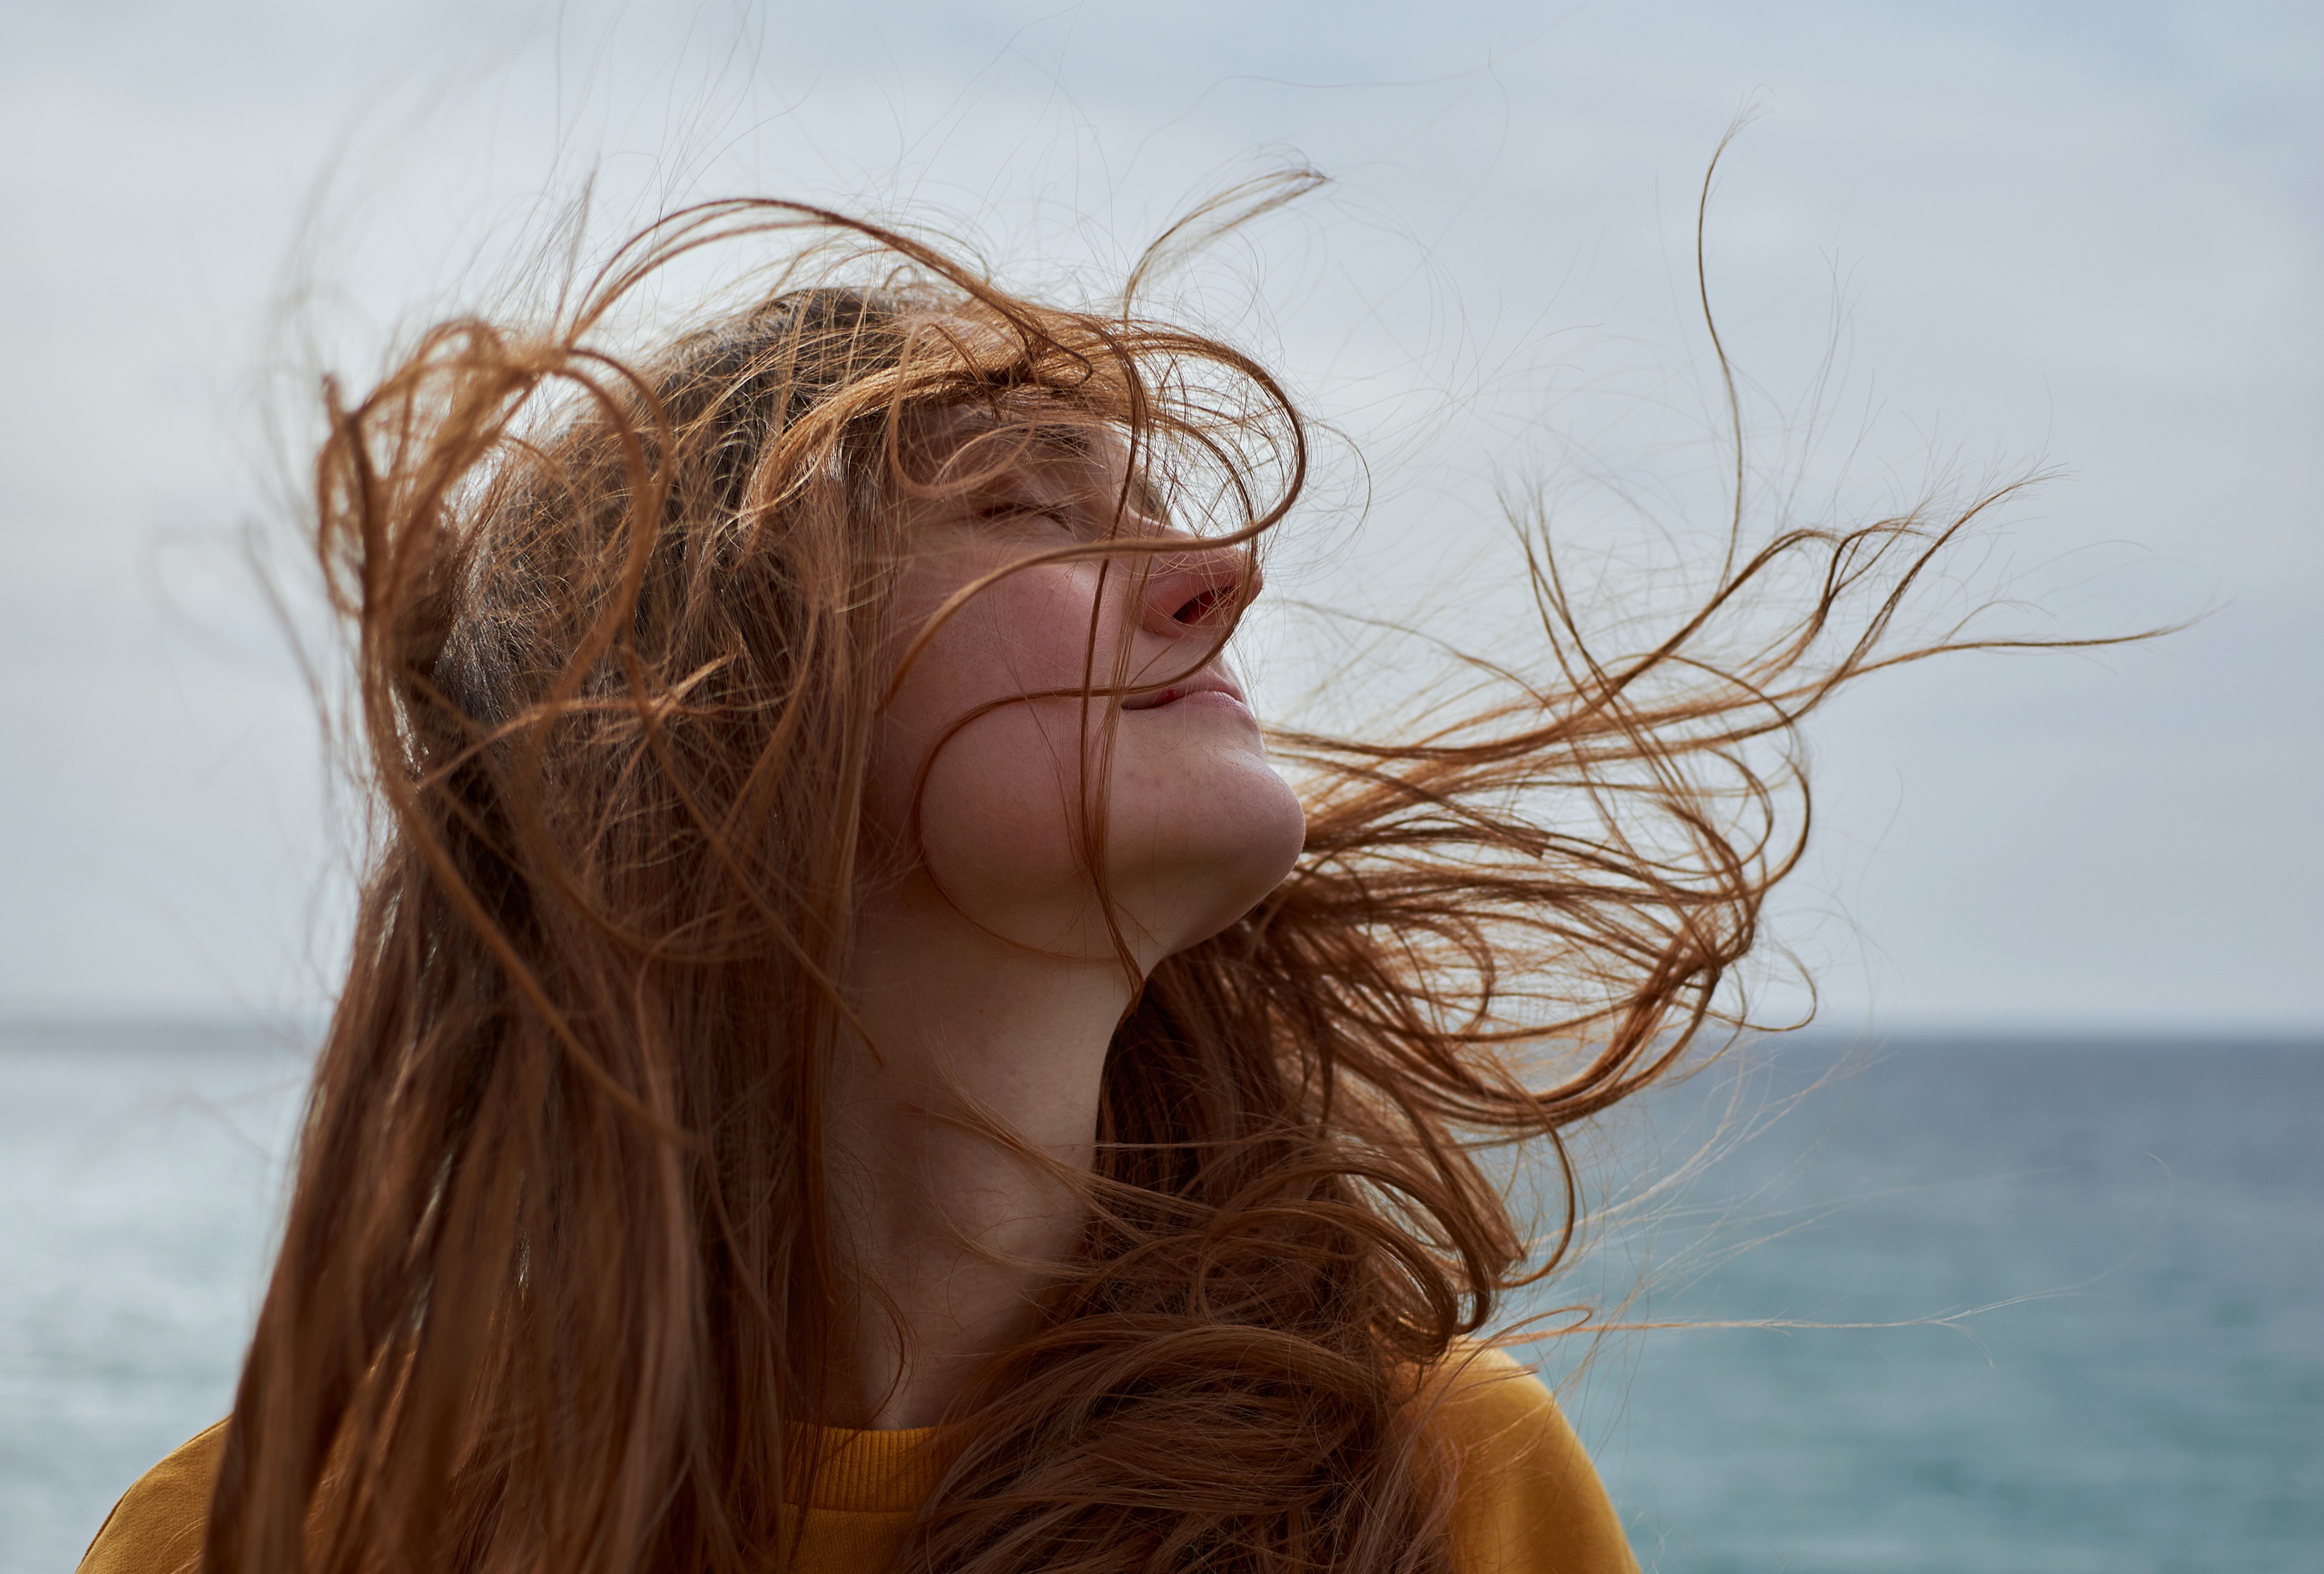 Держать по ветру 3. Развивающиеся волосы. Девушка волосы на ветру. Волосы развеваются на ветру. Девушка с развевающимися волосами.